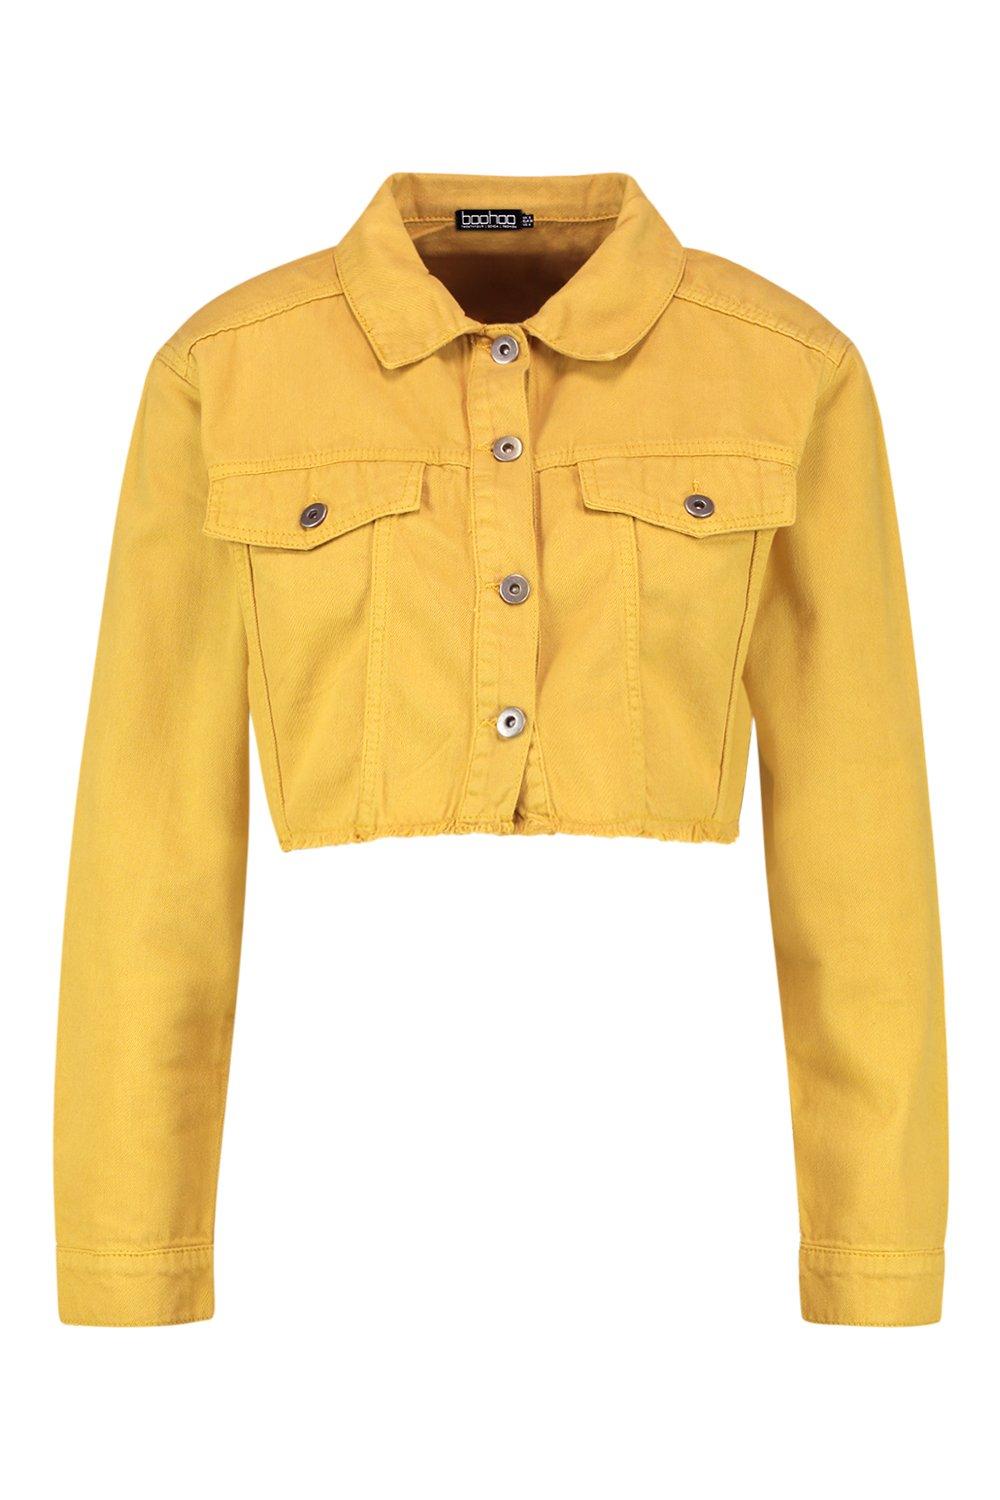 boohoo yellow denim jacket